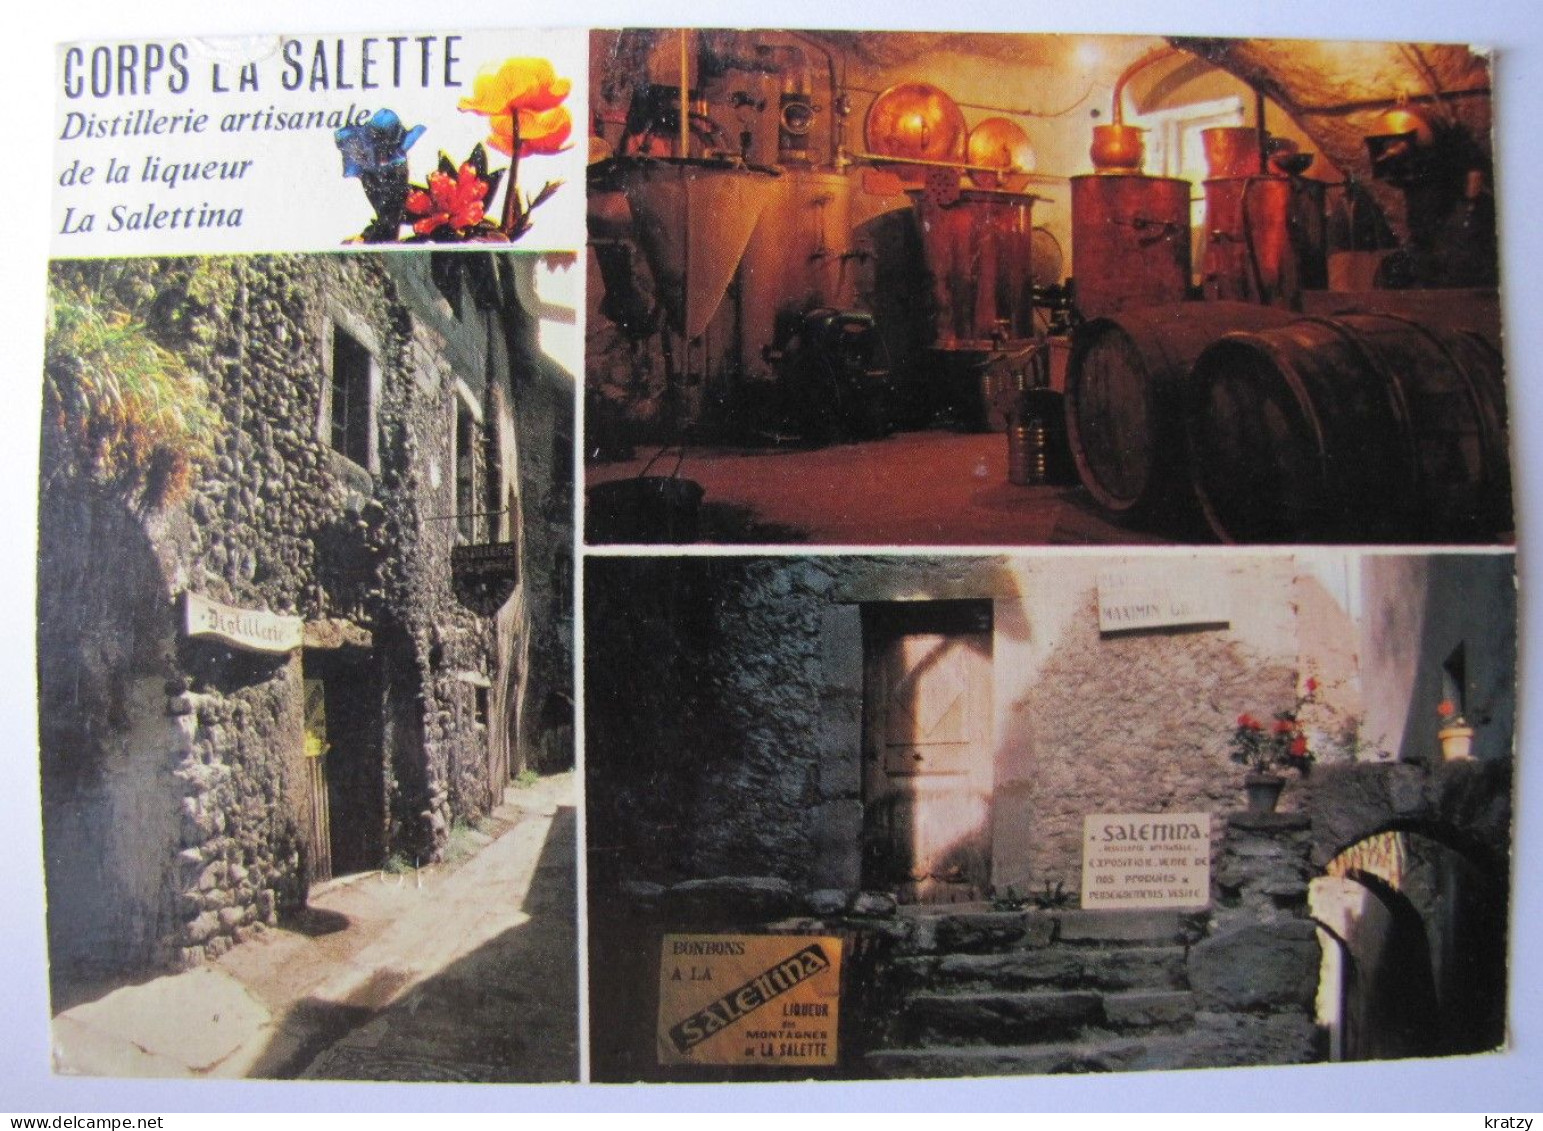 FRANCE - ISERE - CORPS-la-SALETTE - Distillerie De La Liqueur La Salettina - Corps